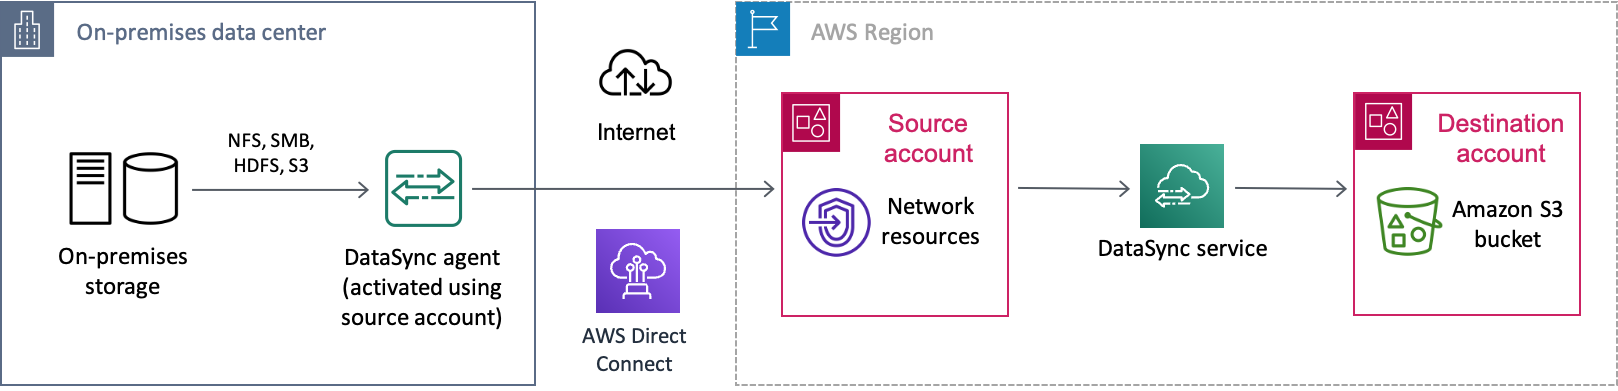 オンプレミスのストレージシステムから、 DataSync AWS Direct ConnectAWSインターネット経由の接続を介してにデータを移動するシナリオの例です。データはまず一方のアカウント AWS アカウント (ソースアカウント) に転送され、最後に別のアカウント AWS アカウント (転送先アカウント) の Amazon S3 バケットに転送されます。